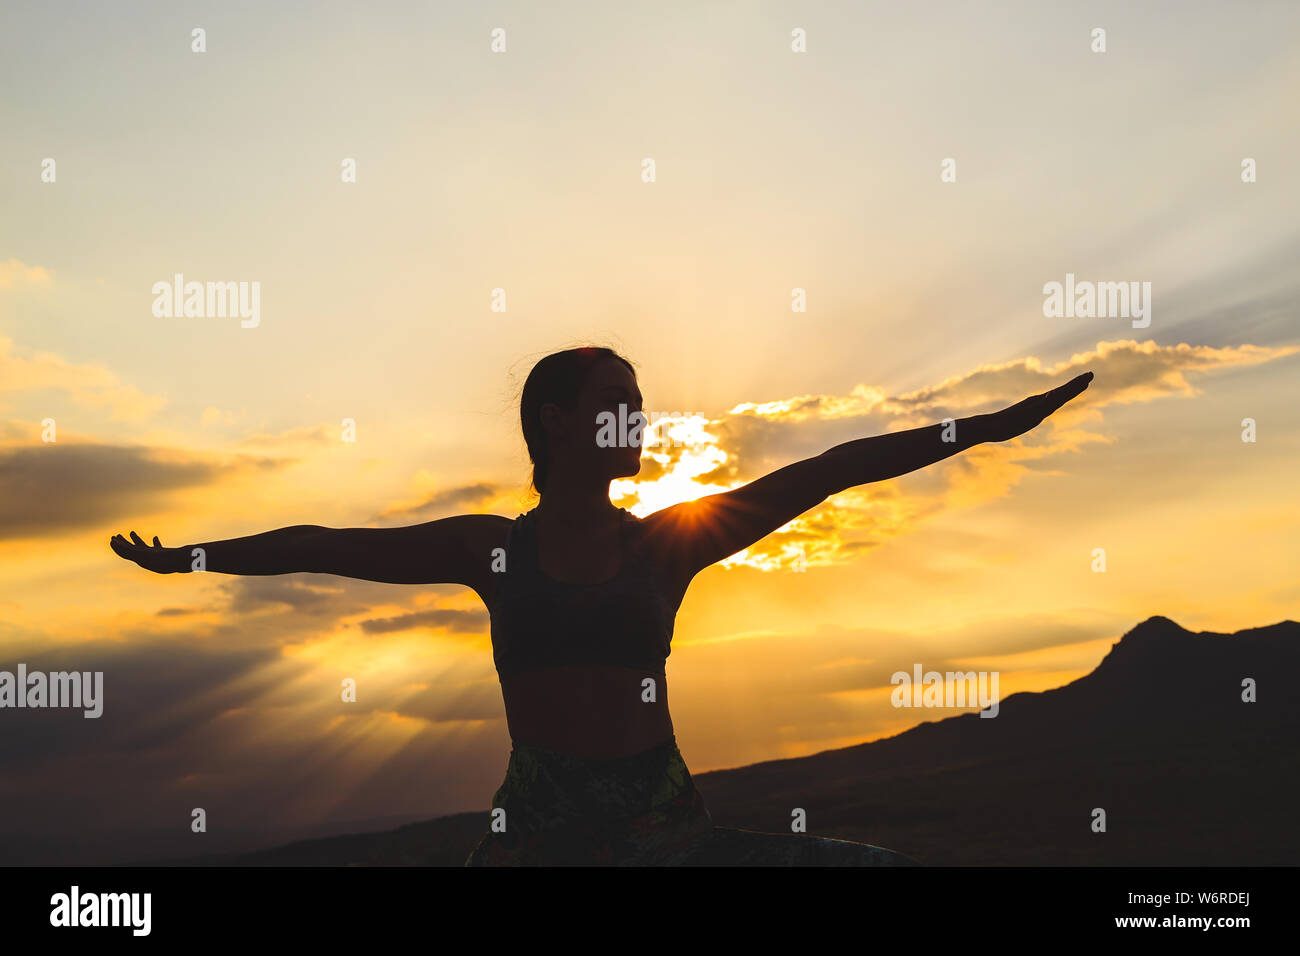 Silhouette der jungen Frau Üben Yoga oder pilates bei Sonnenuntergang oder Sunrise in wunderschöner Lage, ausfallschritt Übung, stehend im Krieger Stockfoto